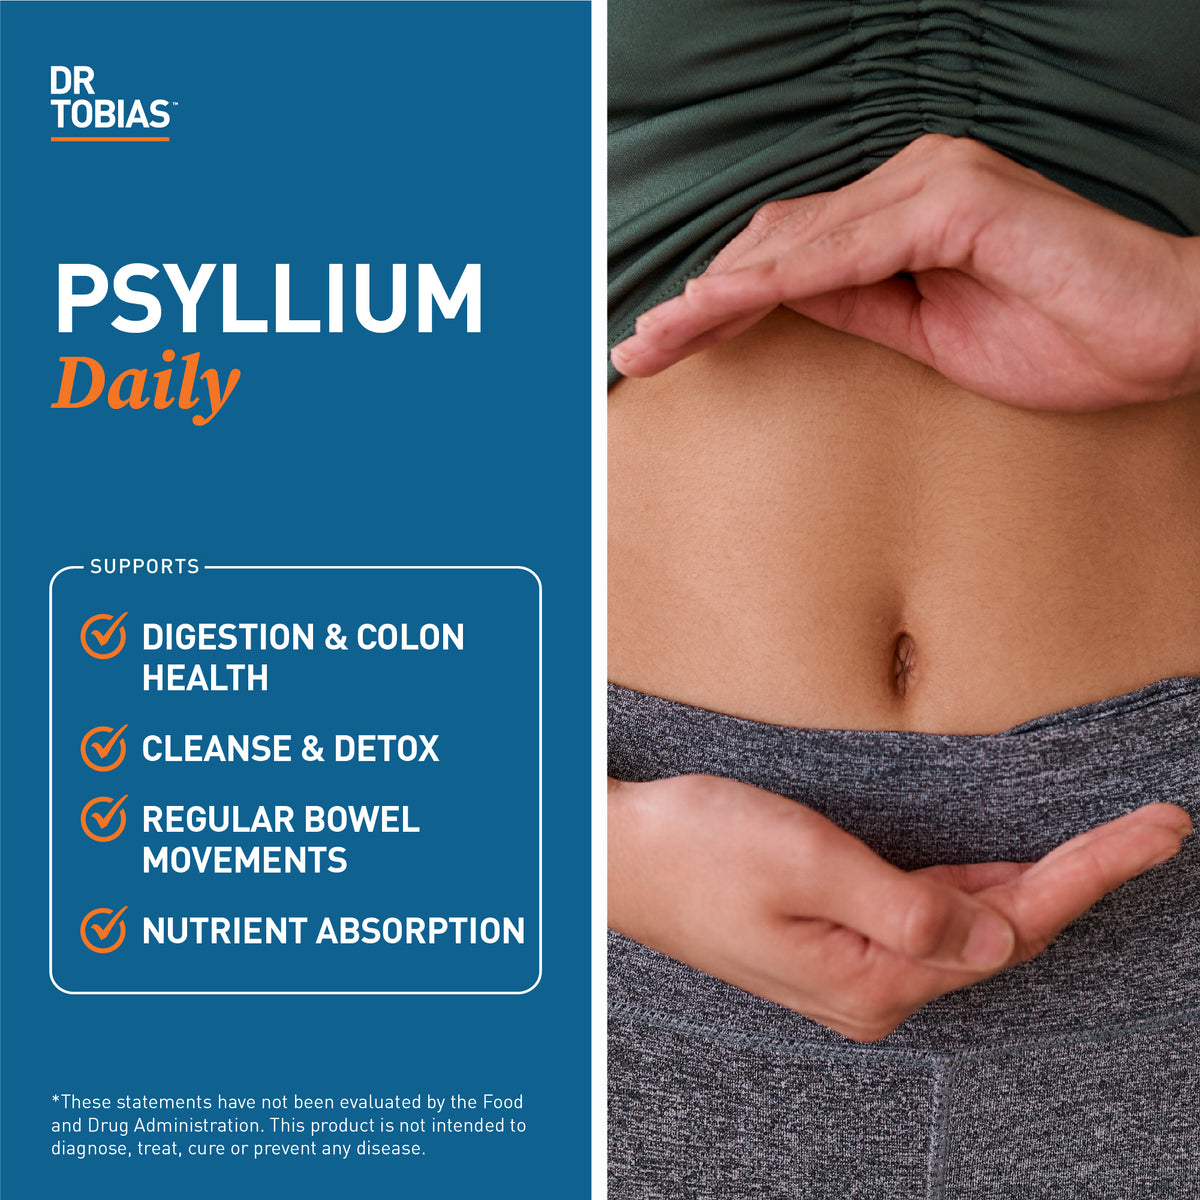 Dr. Tobias Psyllium Daily benefits, psyllium husk benefits, psyllium husk fiber